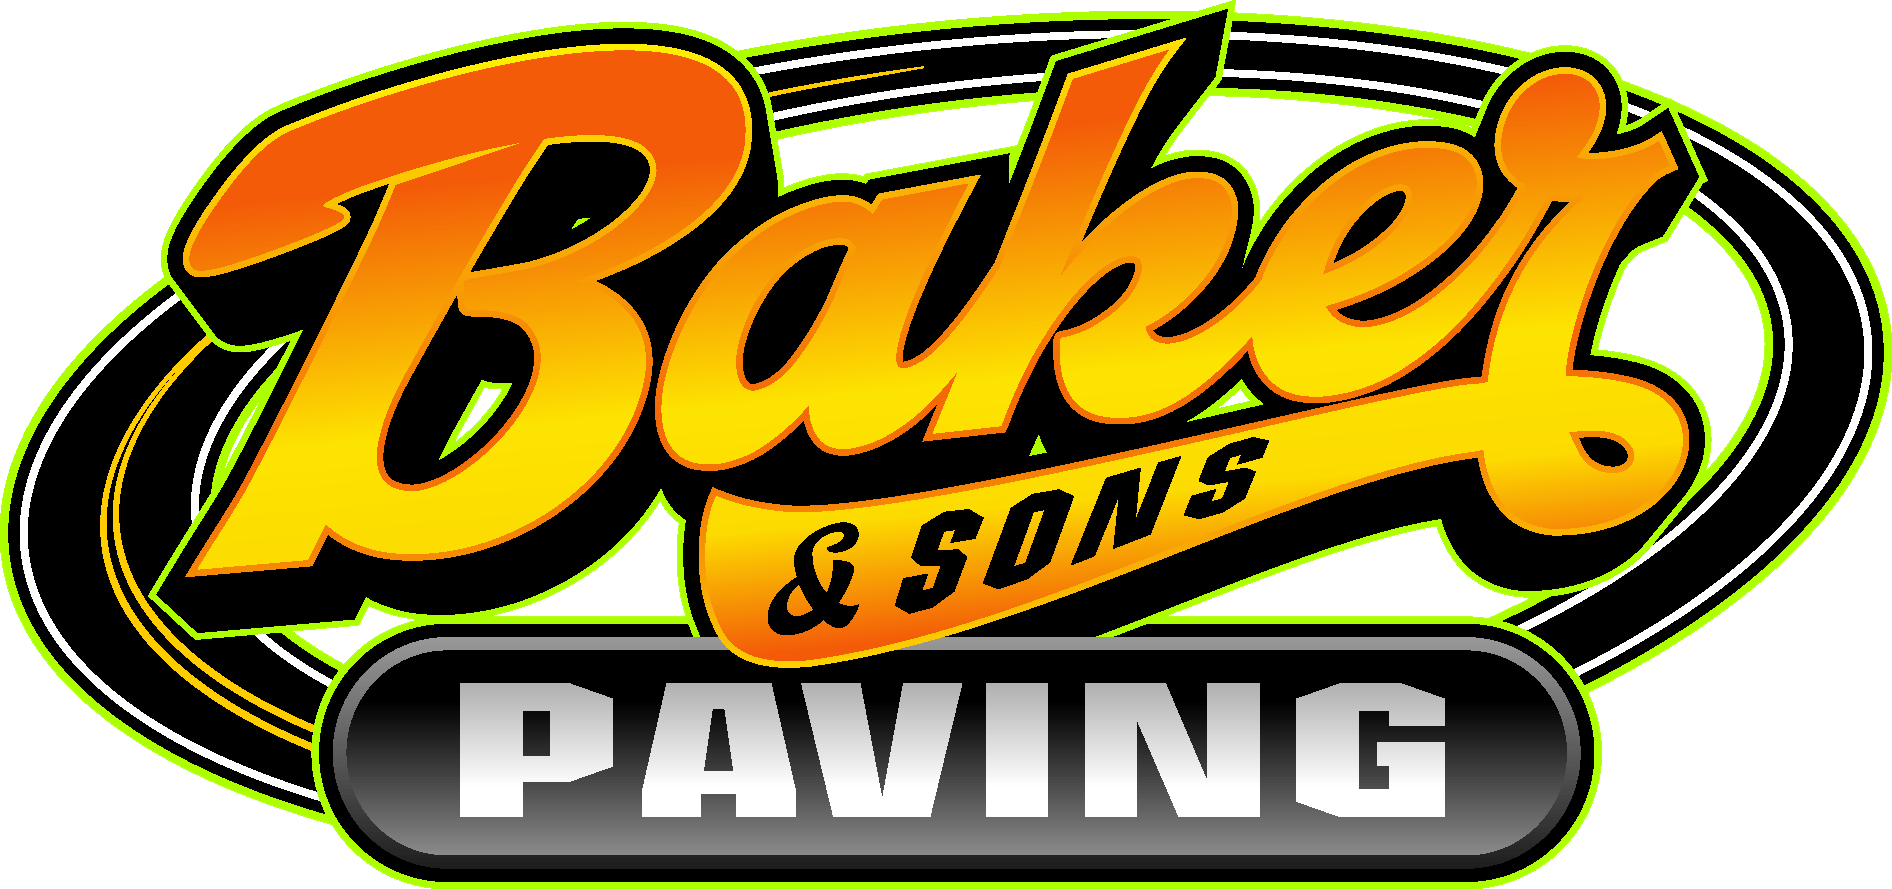 Baker & Sons Paving 